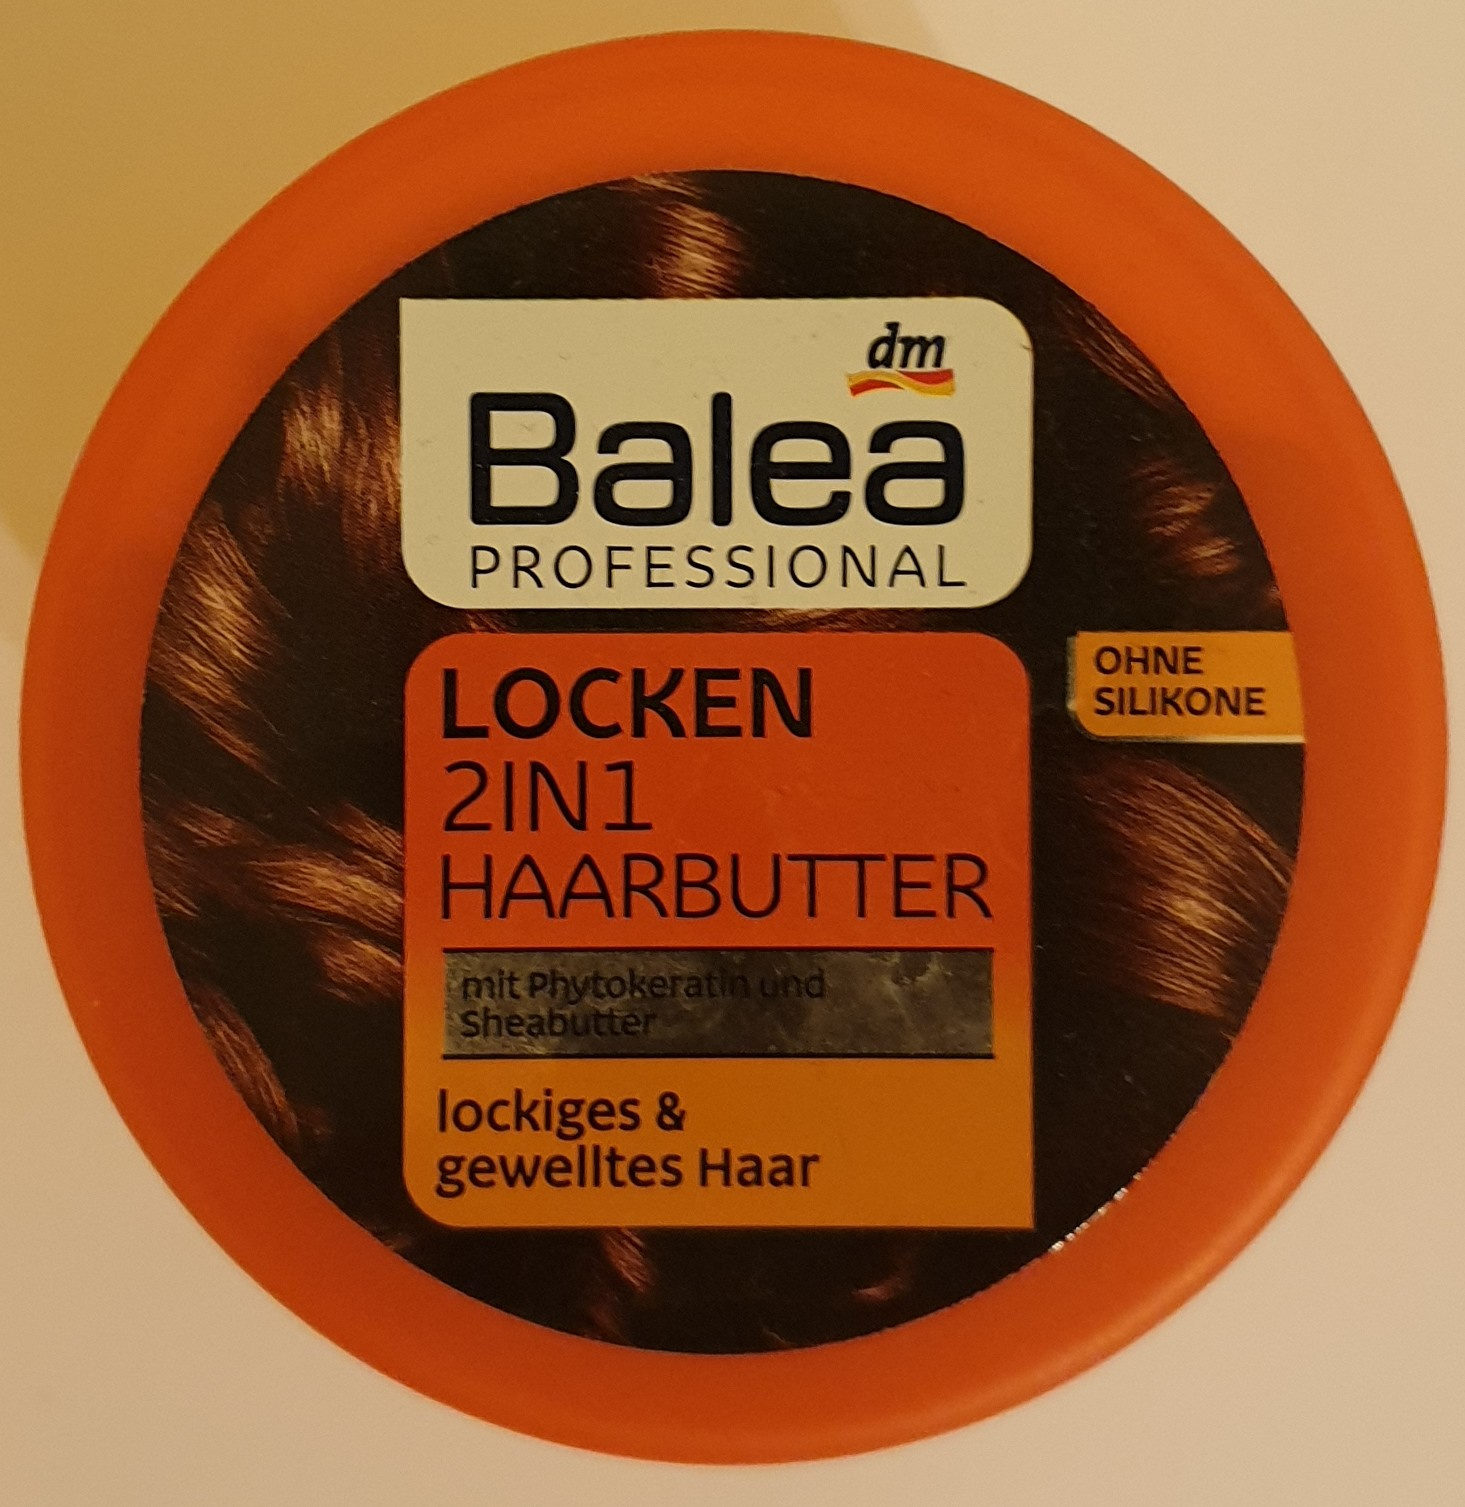 Locken 2in1 Haarbutter - Produto - de